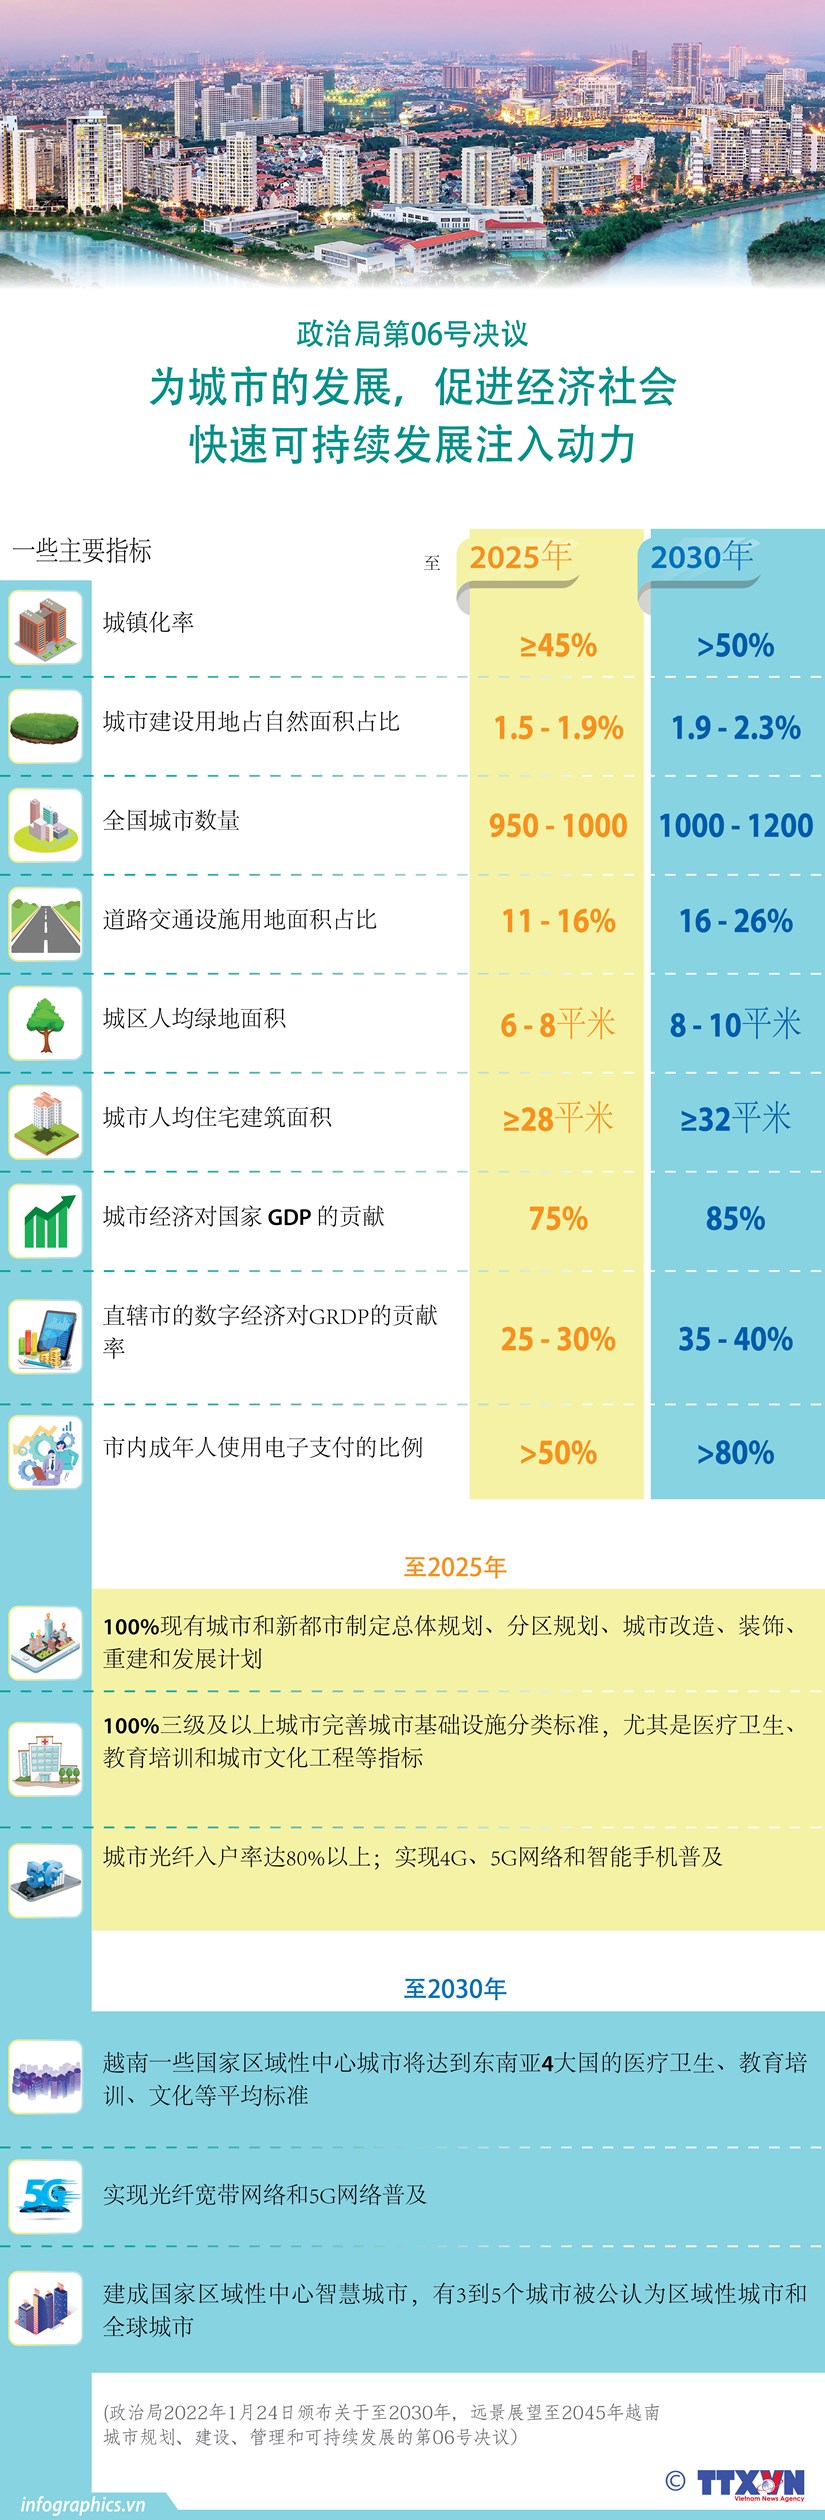 图表新闻：越共中央政治局第6号决议为城市发展、经济社会快速可持续发展注入动力 hinh anh 1